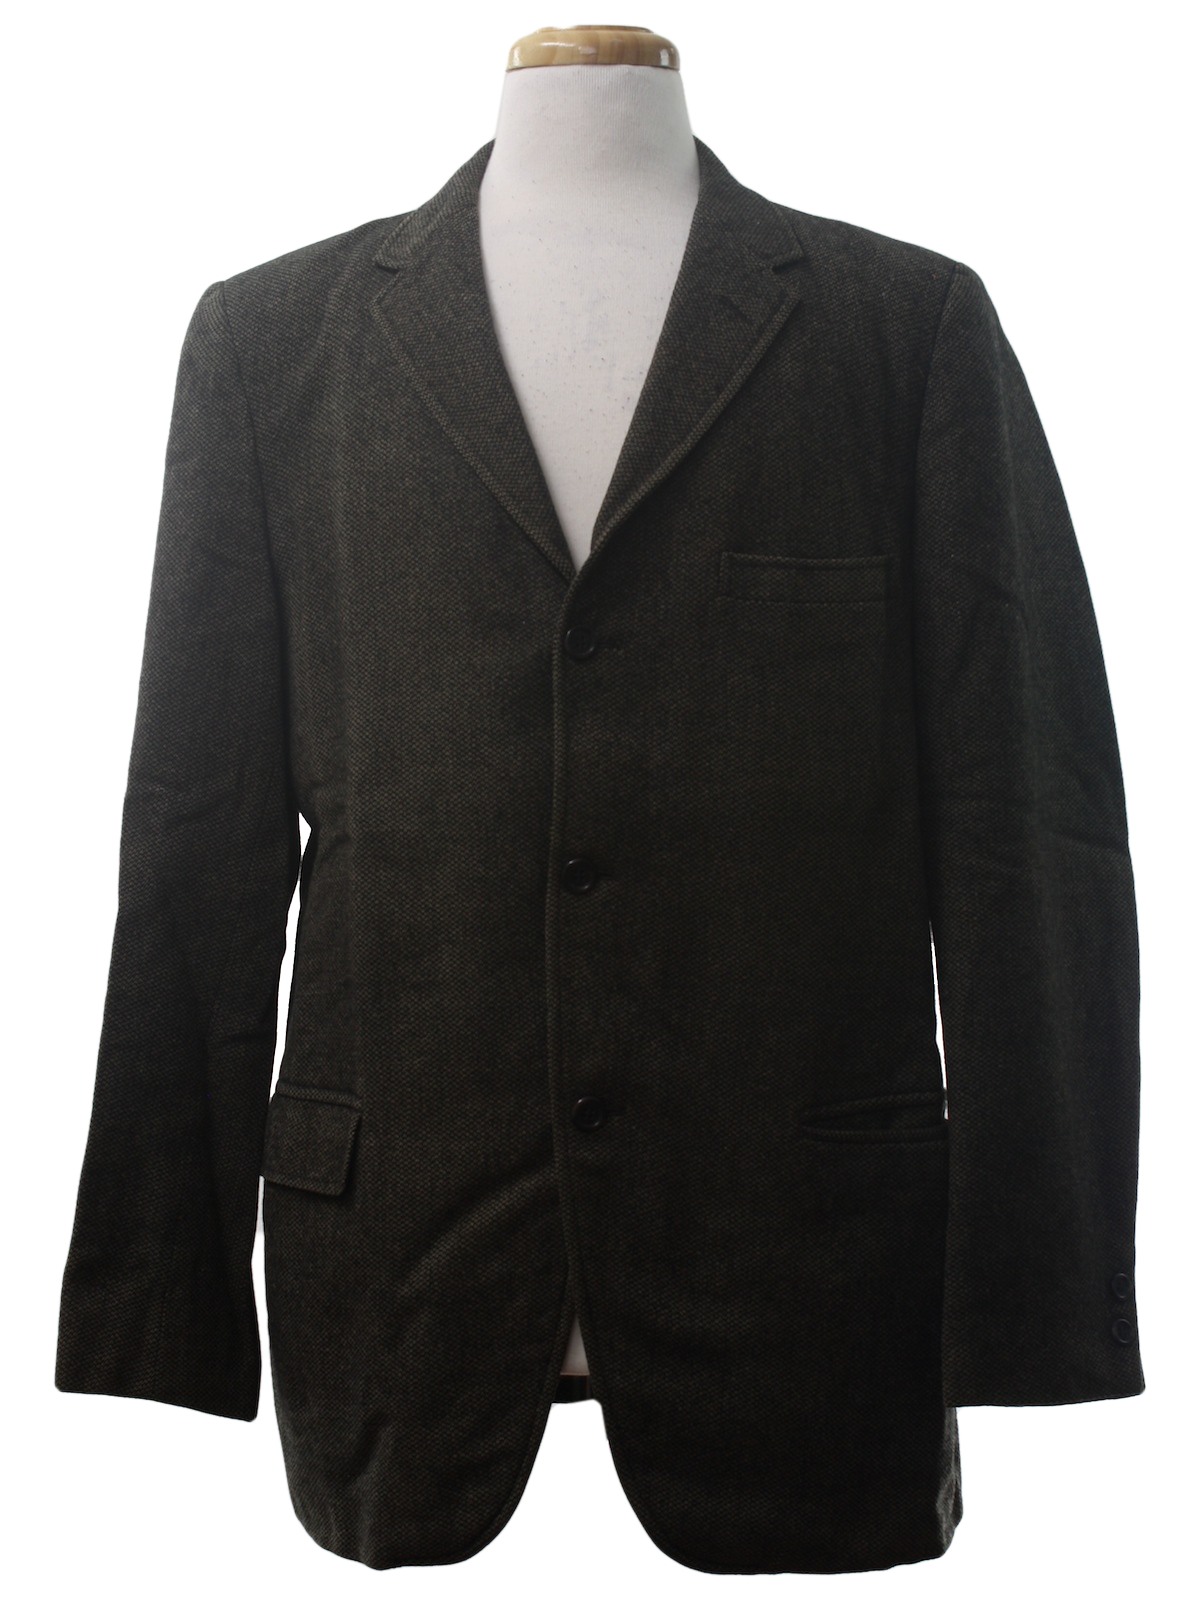 Retro 1960's Jacket (Varsity) : 60s -Varsity- Mens tan and black tight ...